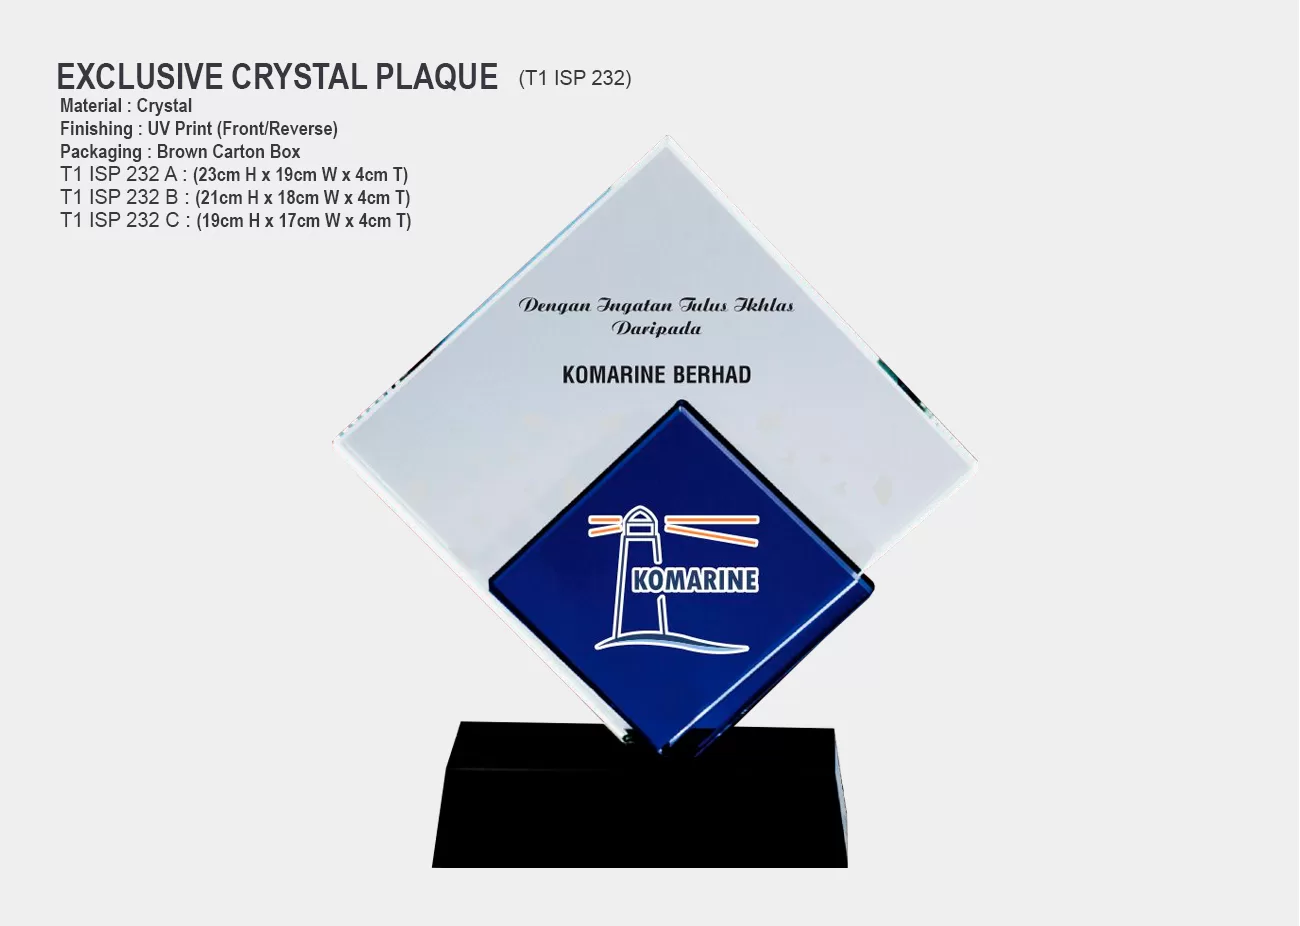 Crystal Plaque